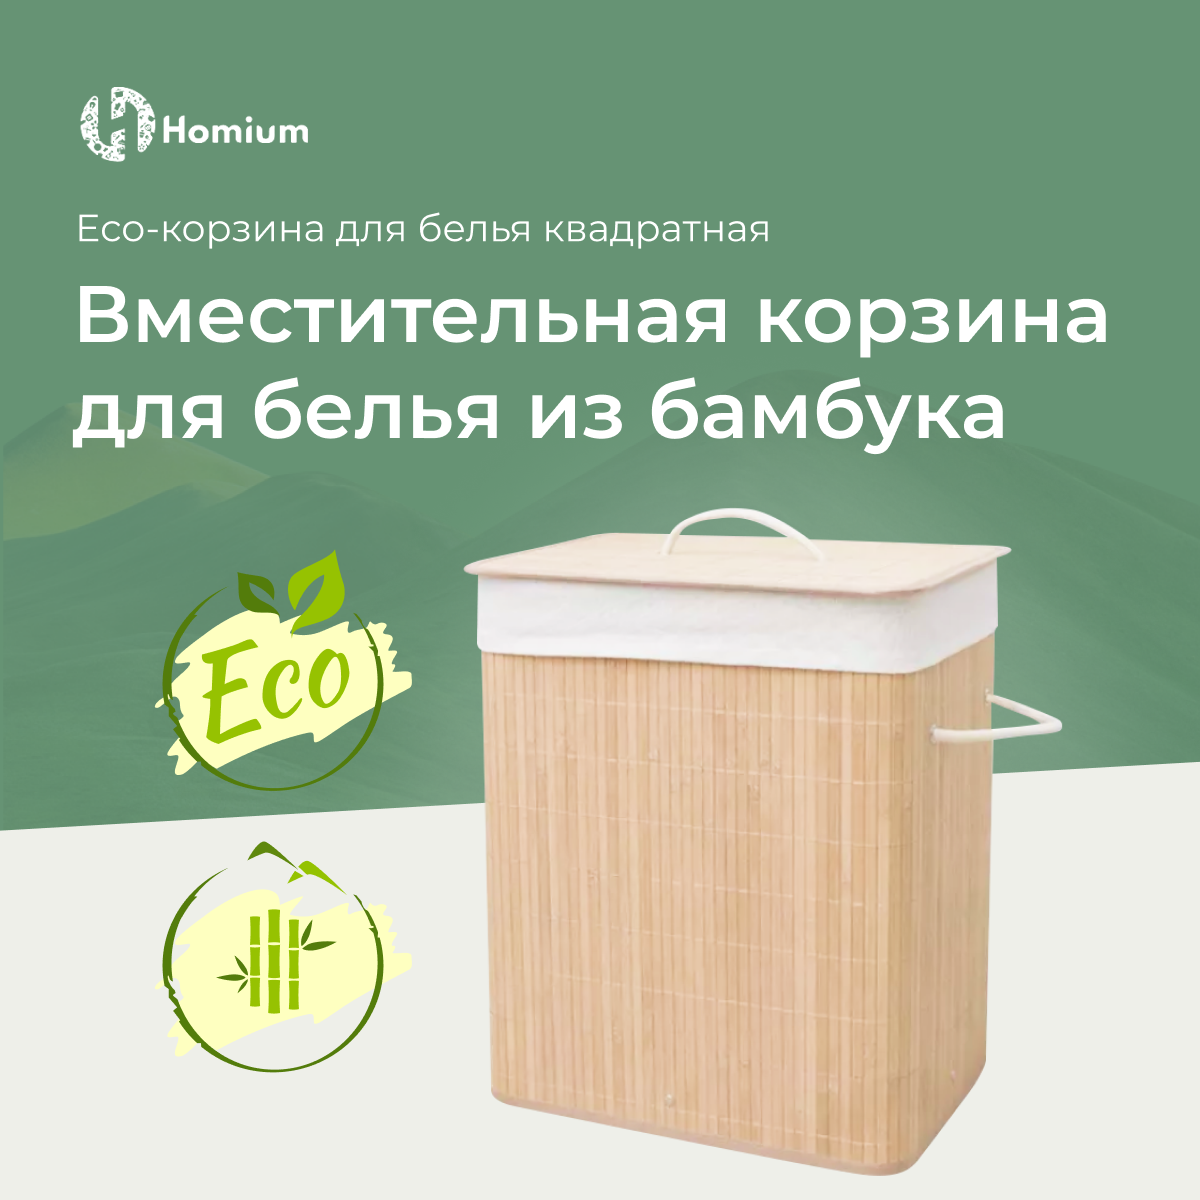 Корзина для белья Homium for Home, Eco, размер 40*30*60см, квадратная - купить в www.cenam.net, цена на Мегамаркет